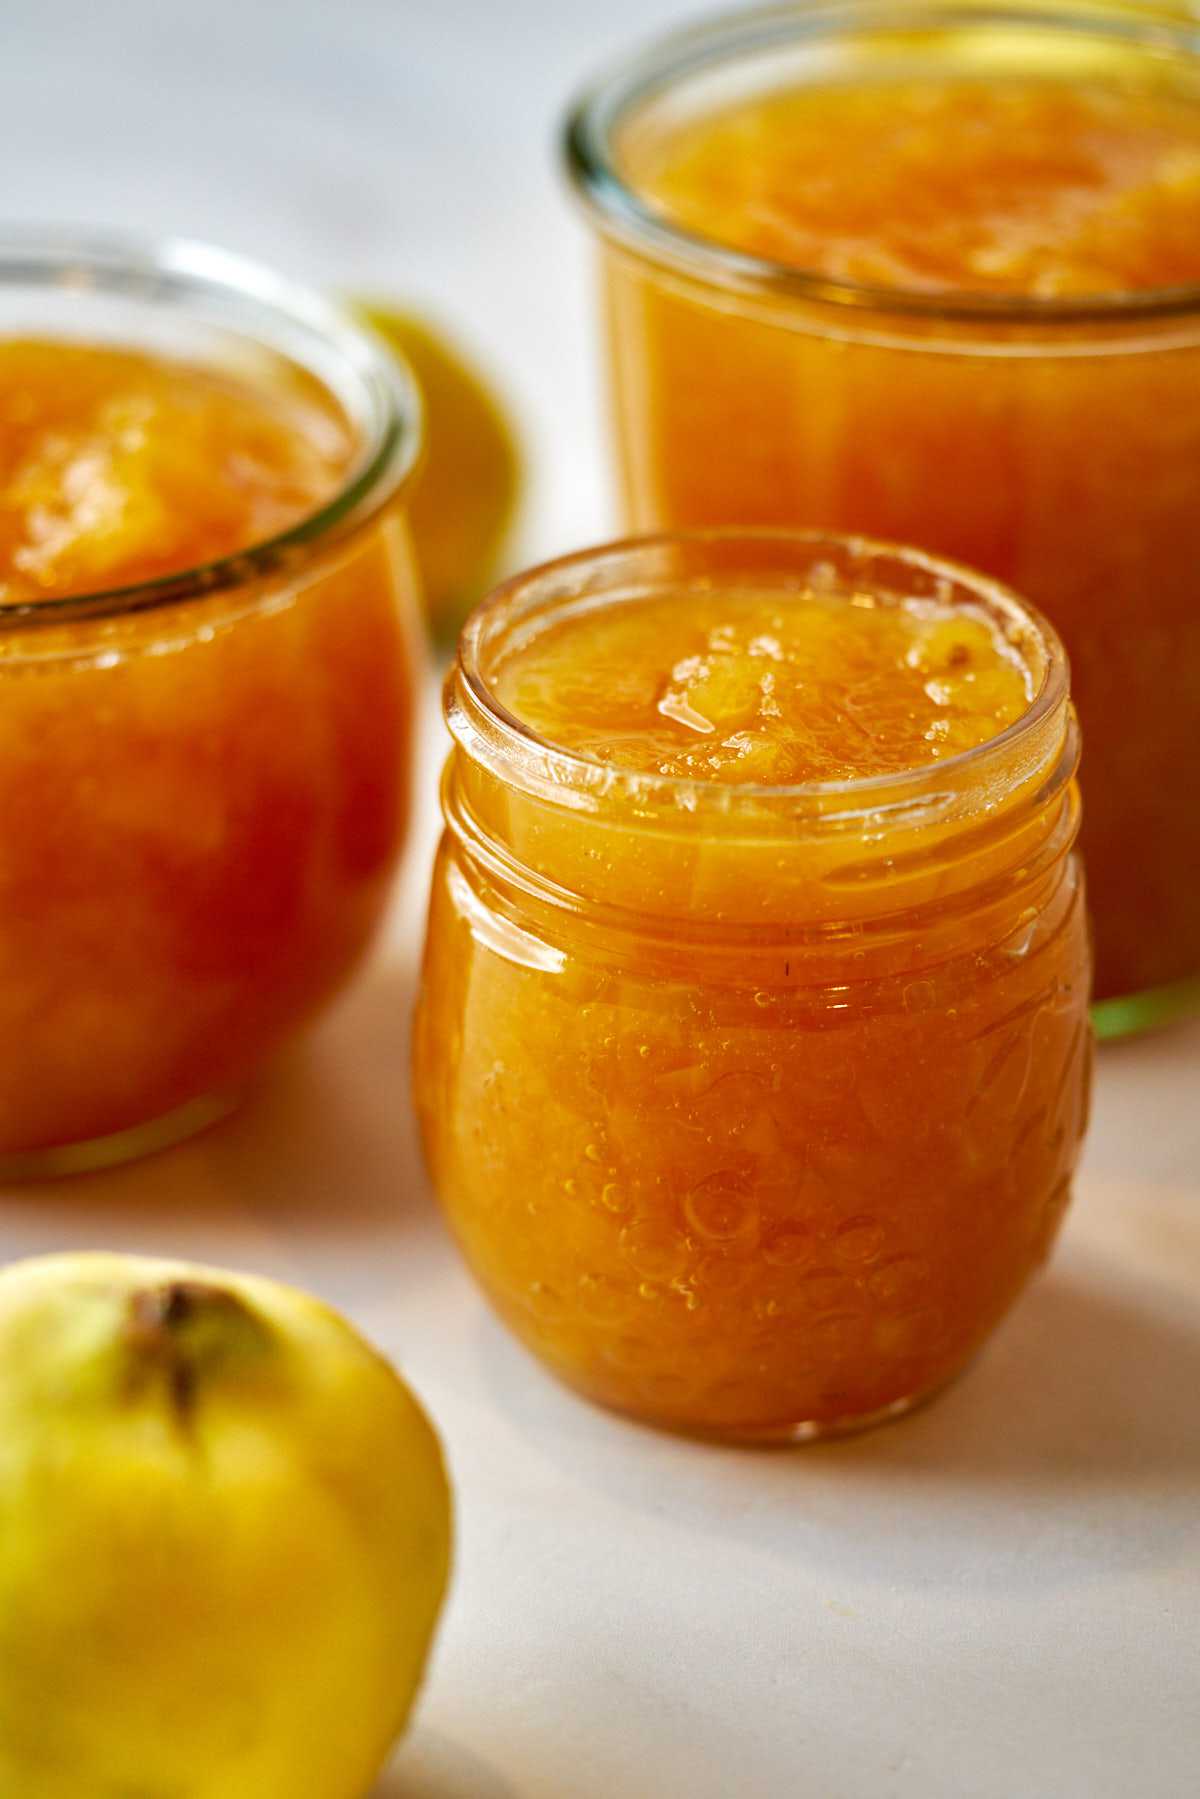 Orange jam in jars.